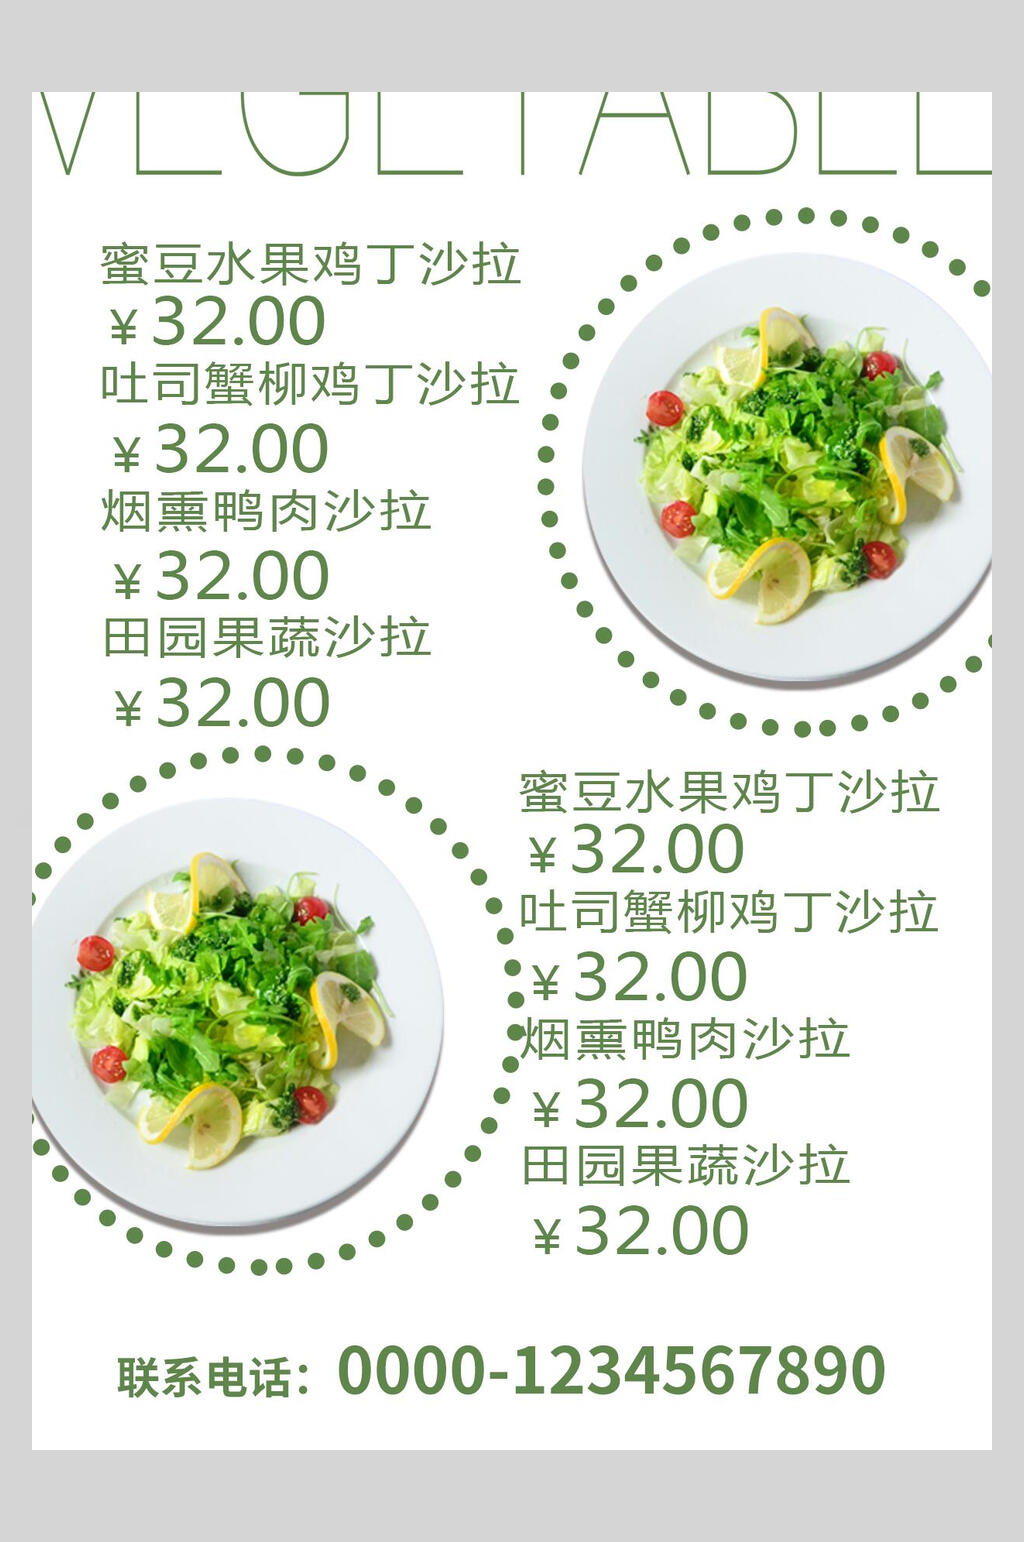 清新简约绿色沙拉菜谱菜单价格表海报素材